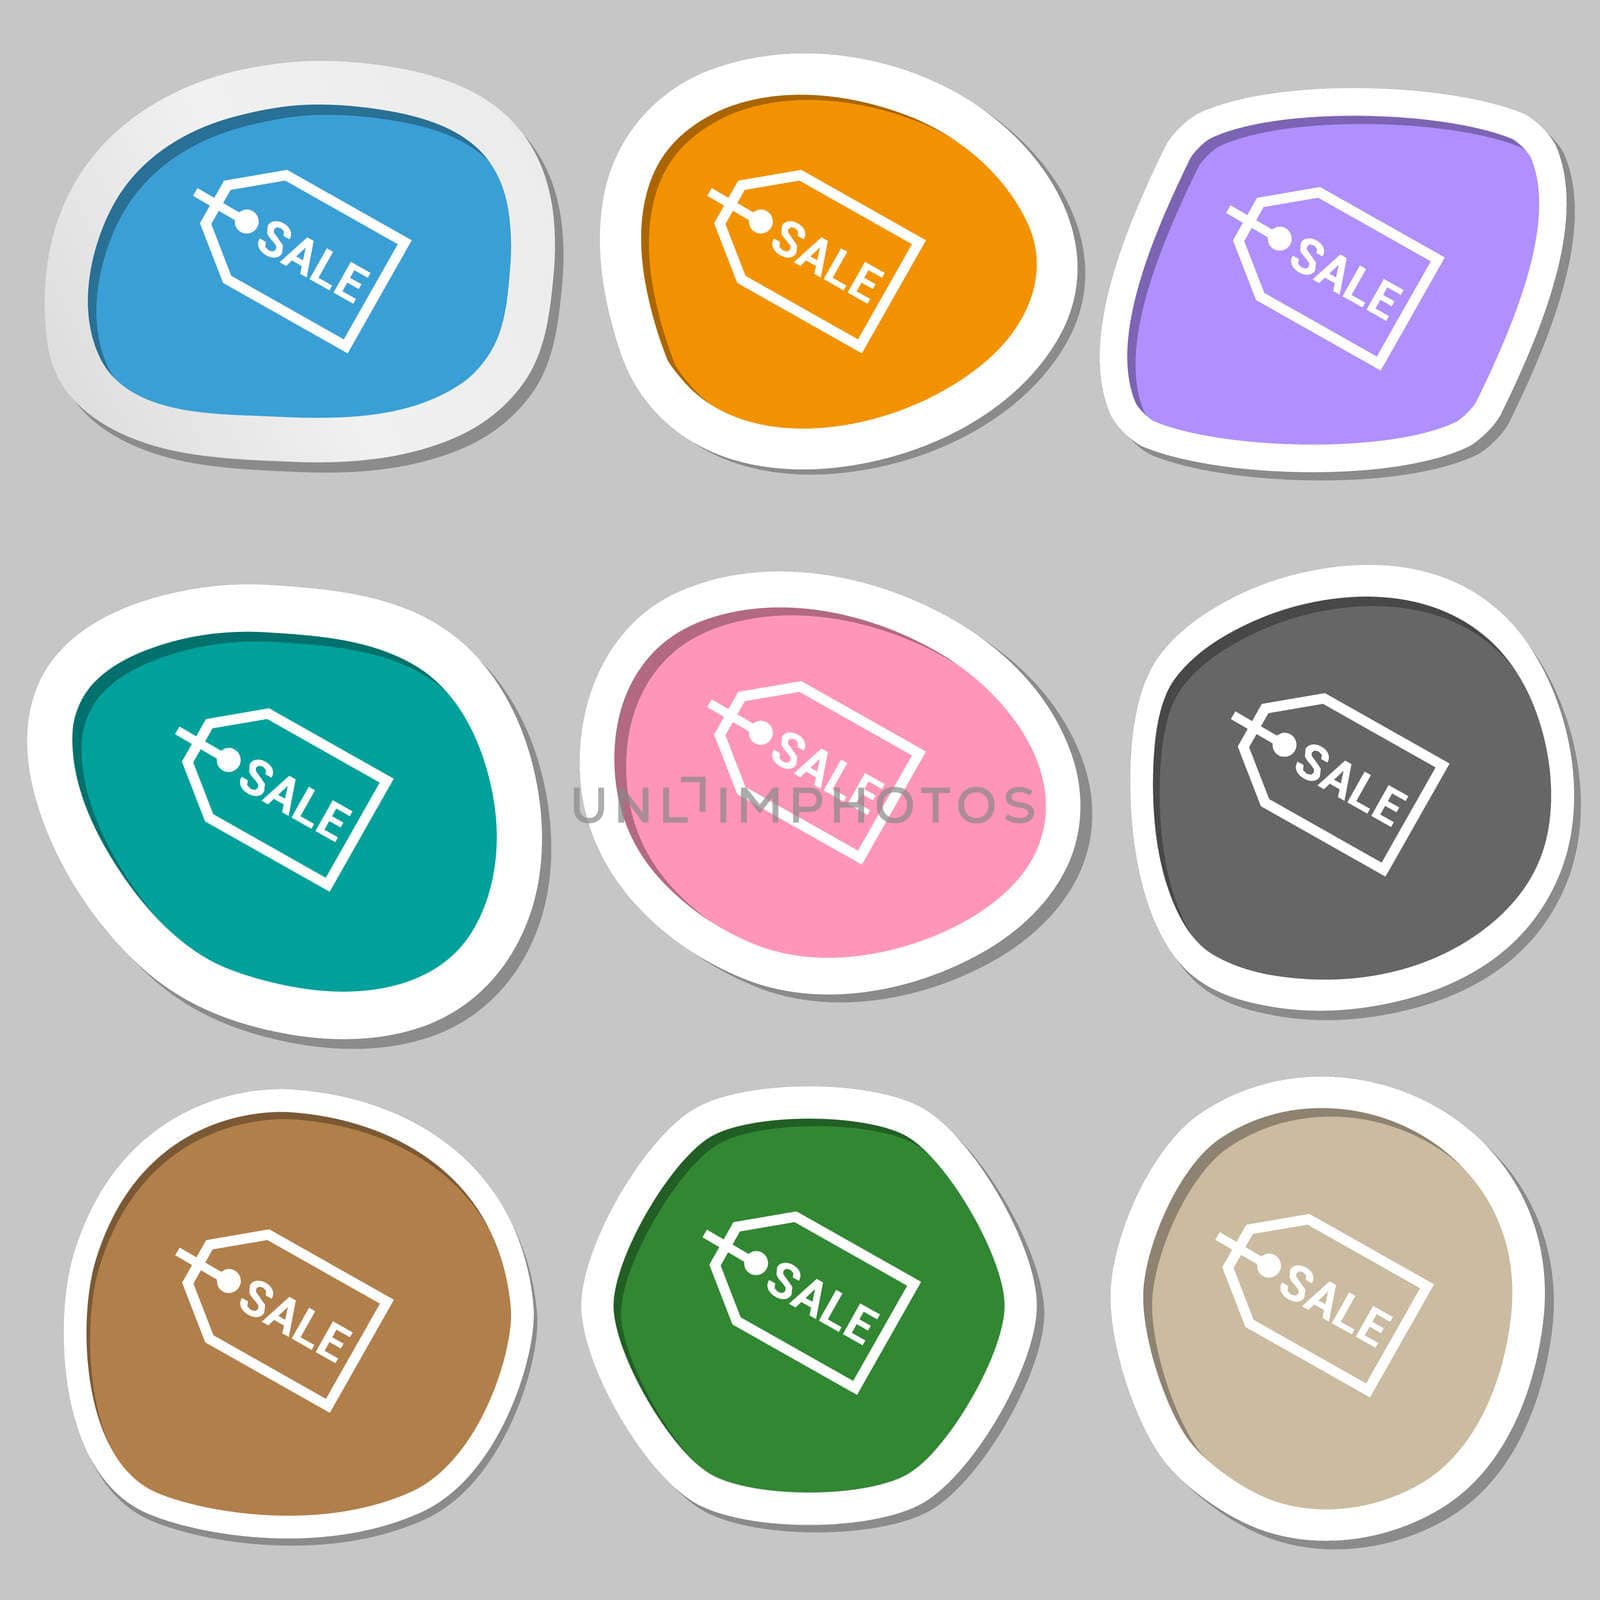 Sale icon symbols. Multicolored paper stickers. illustration